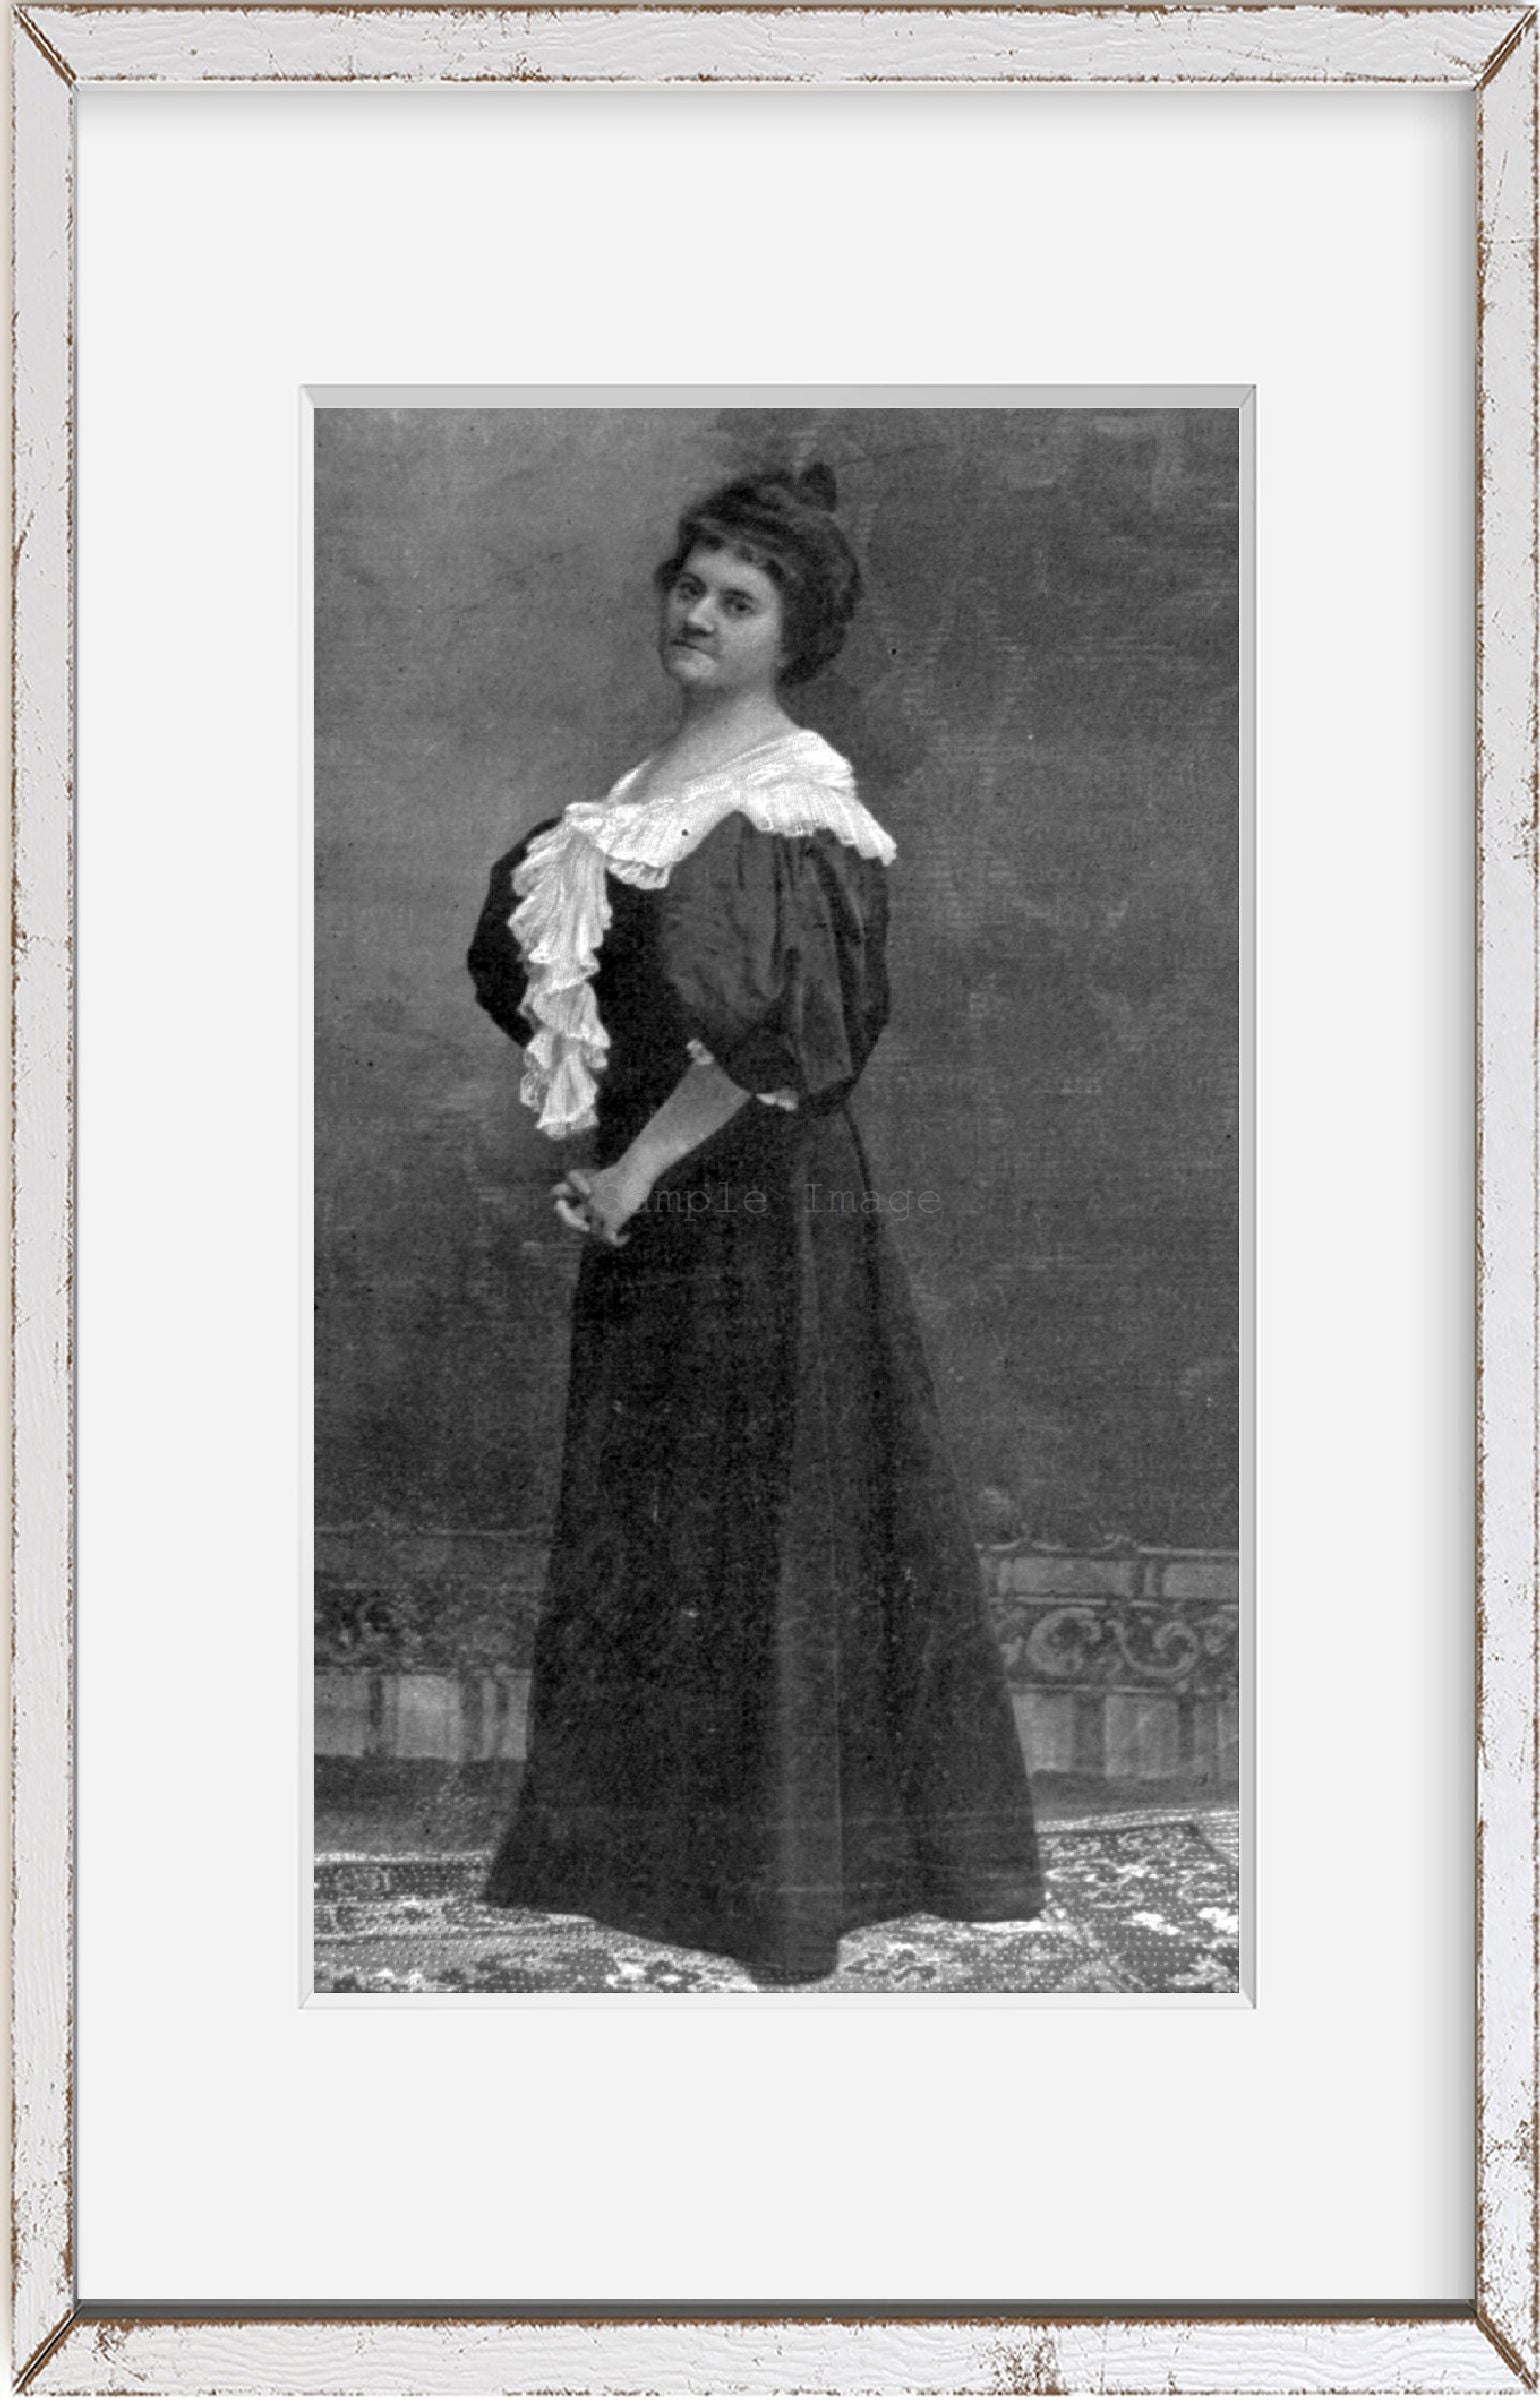 Photo: Ellen Anderson Gholson Glasgow, 1873-1945, novelist